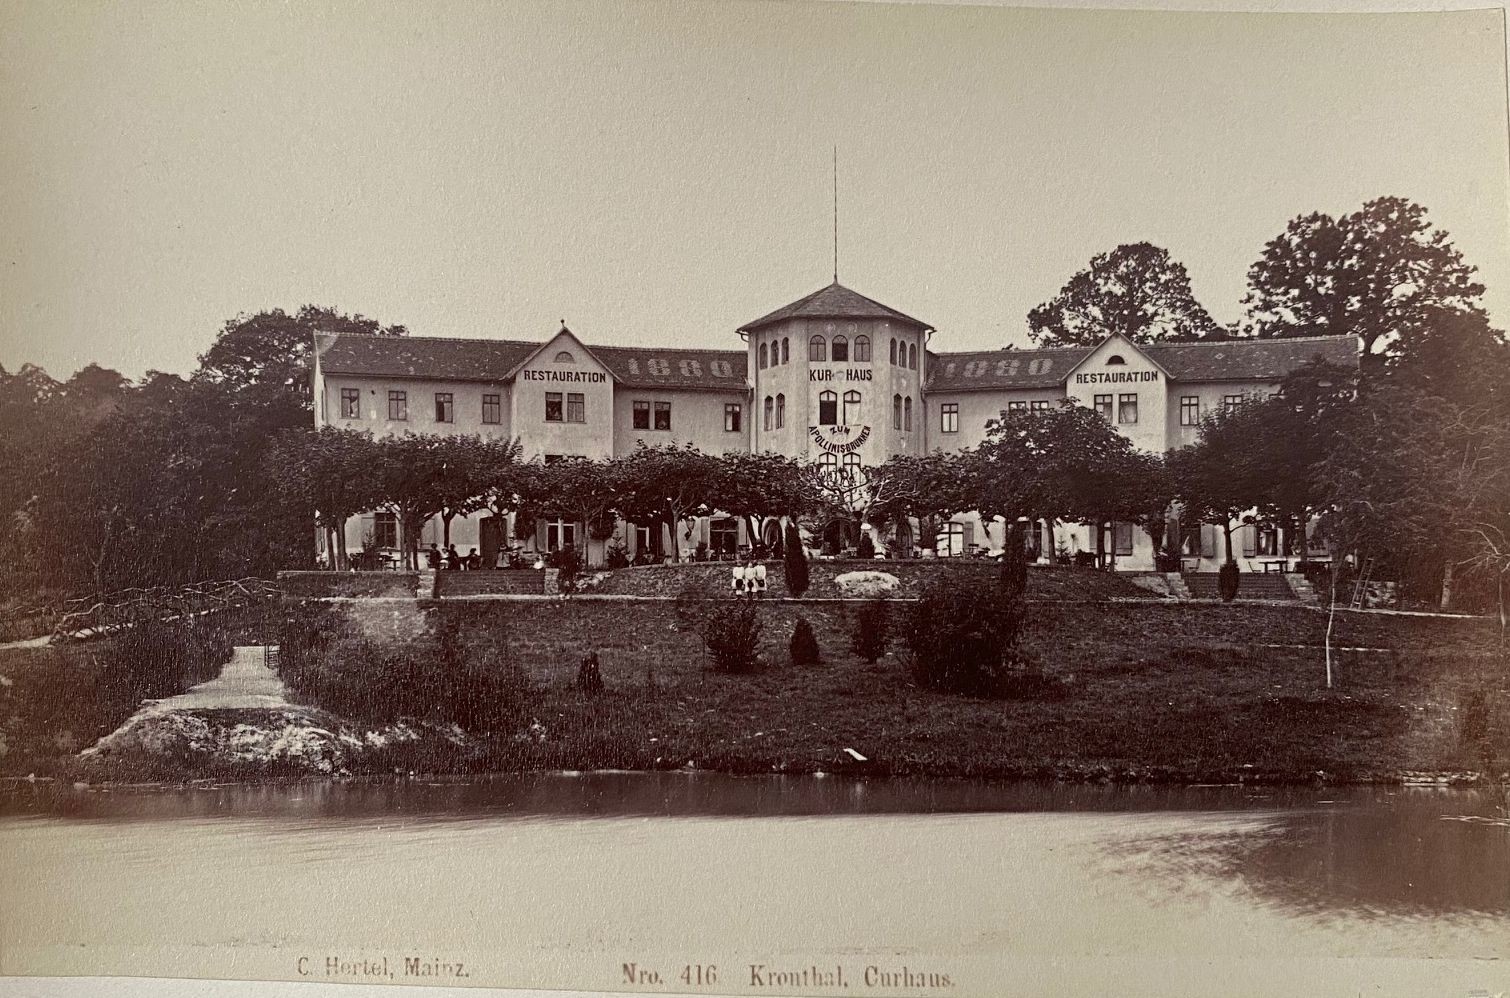 Fotografie, Carl Hertel No. 416, Kronthal, Curhaus, ca. 1885 (Taunus-Rhein-Main - Regionalgeschichtliche Sammlung Dr. Stefan Naas CC BY-NC-SA)